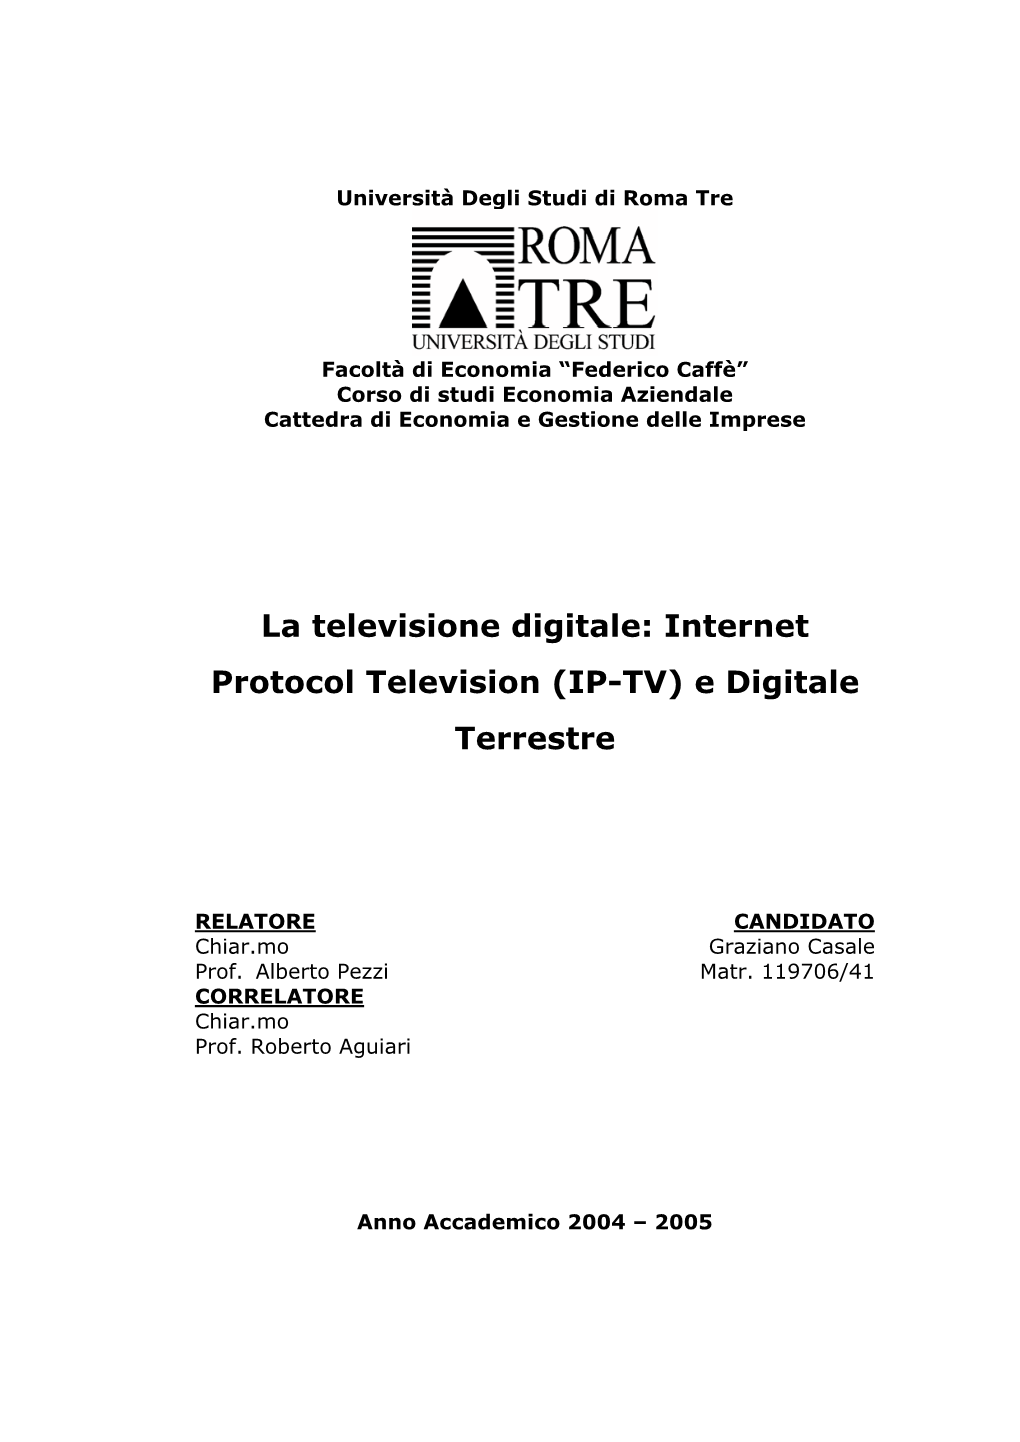 Internet Protocol Television (IP-TV) E Digitale Terrestre